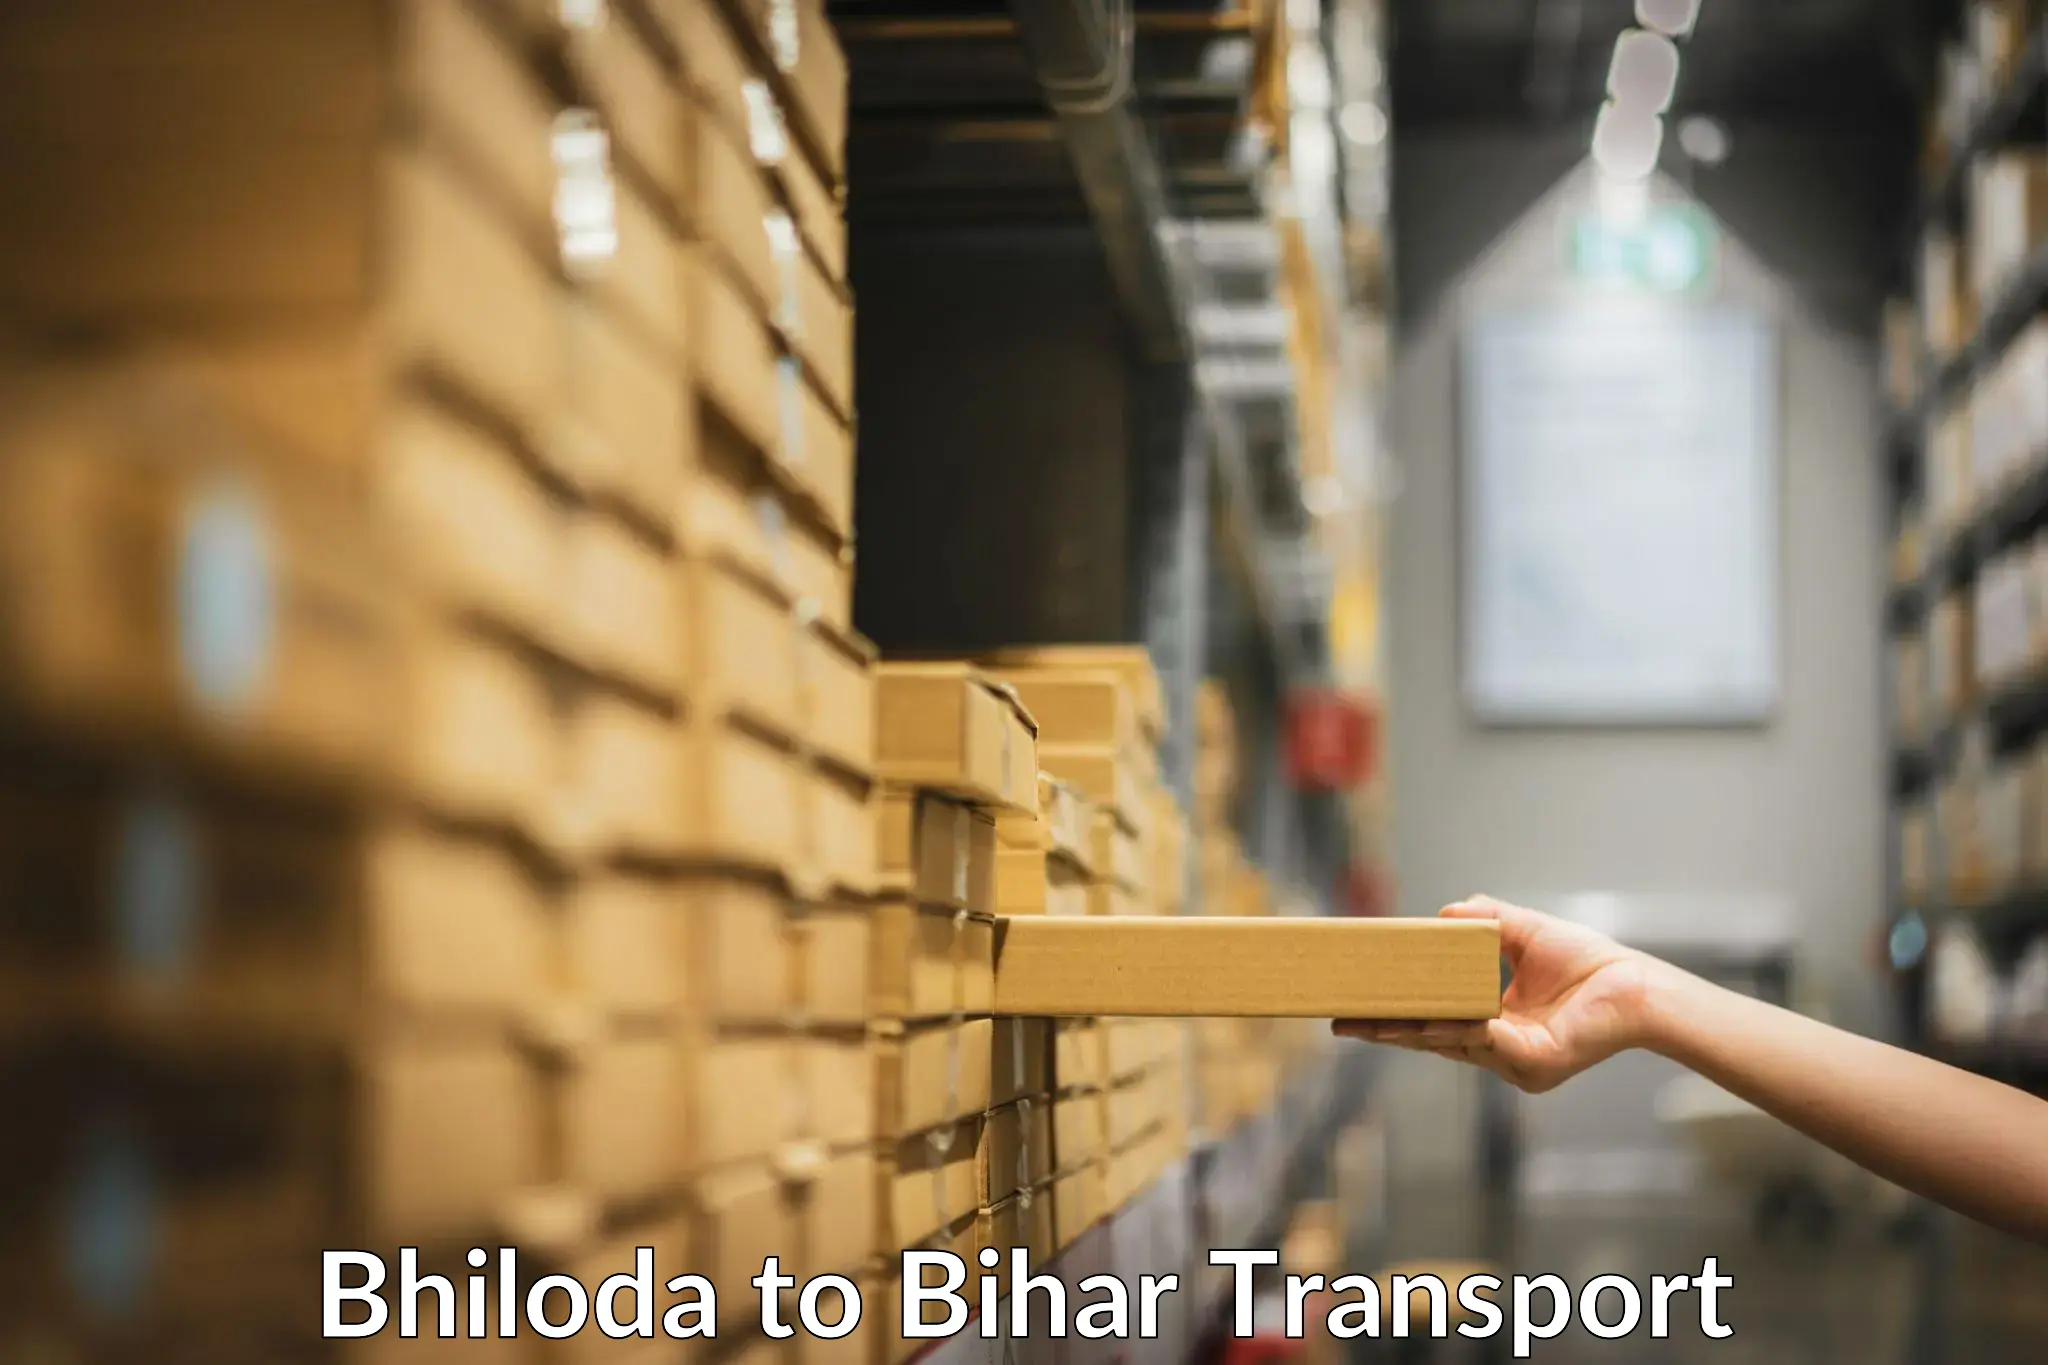 Delivery service Bhiloda to Sitamarhi